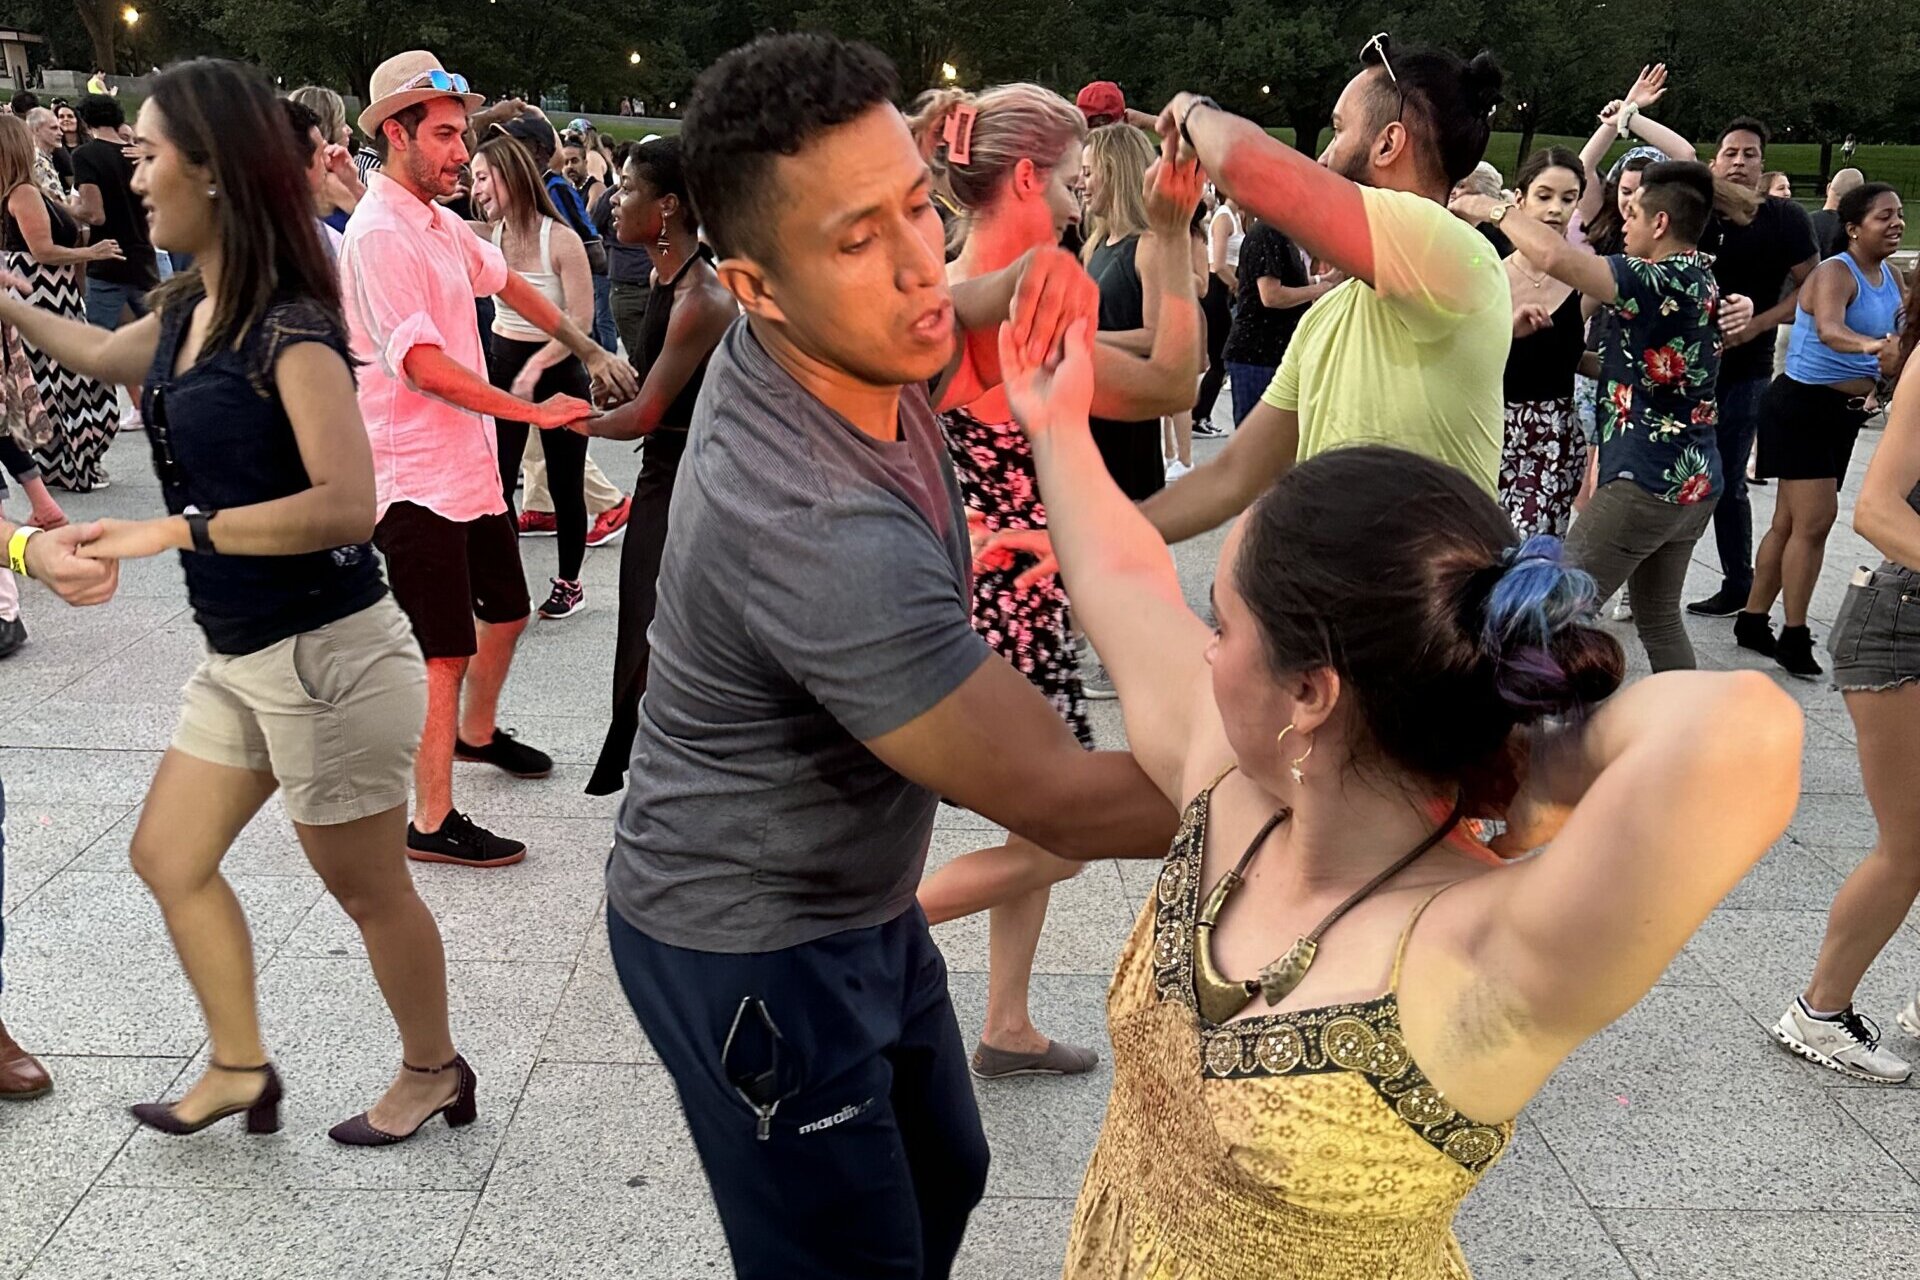 拉丁舞会“以舞蹈的共同语言将人们聚集在一起”在华盛顿火爆兴起